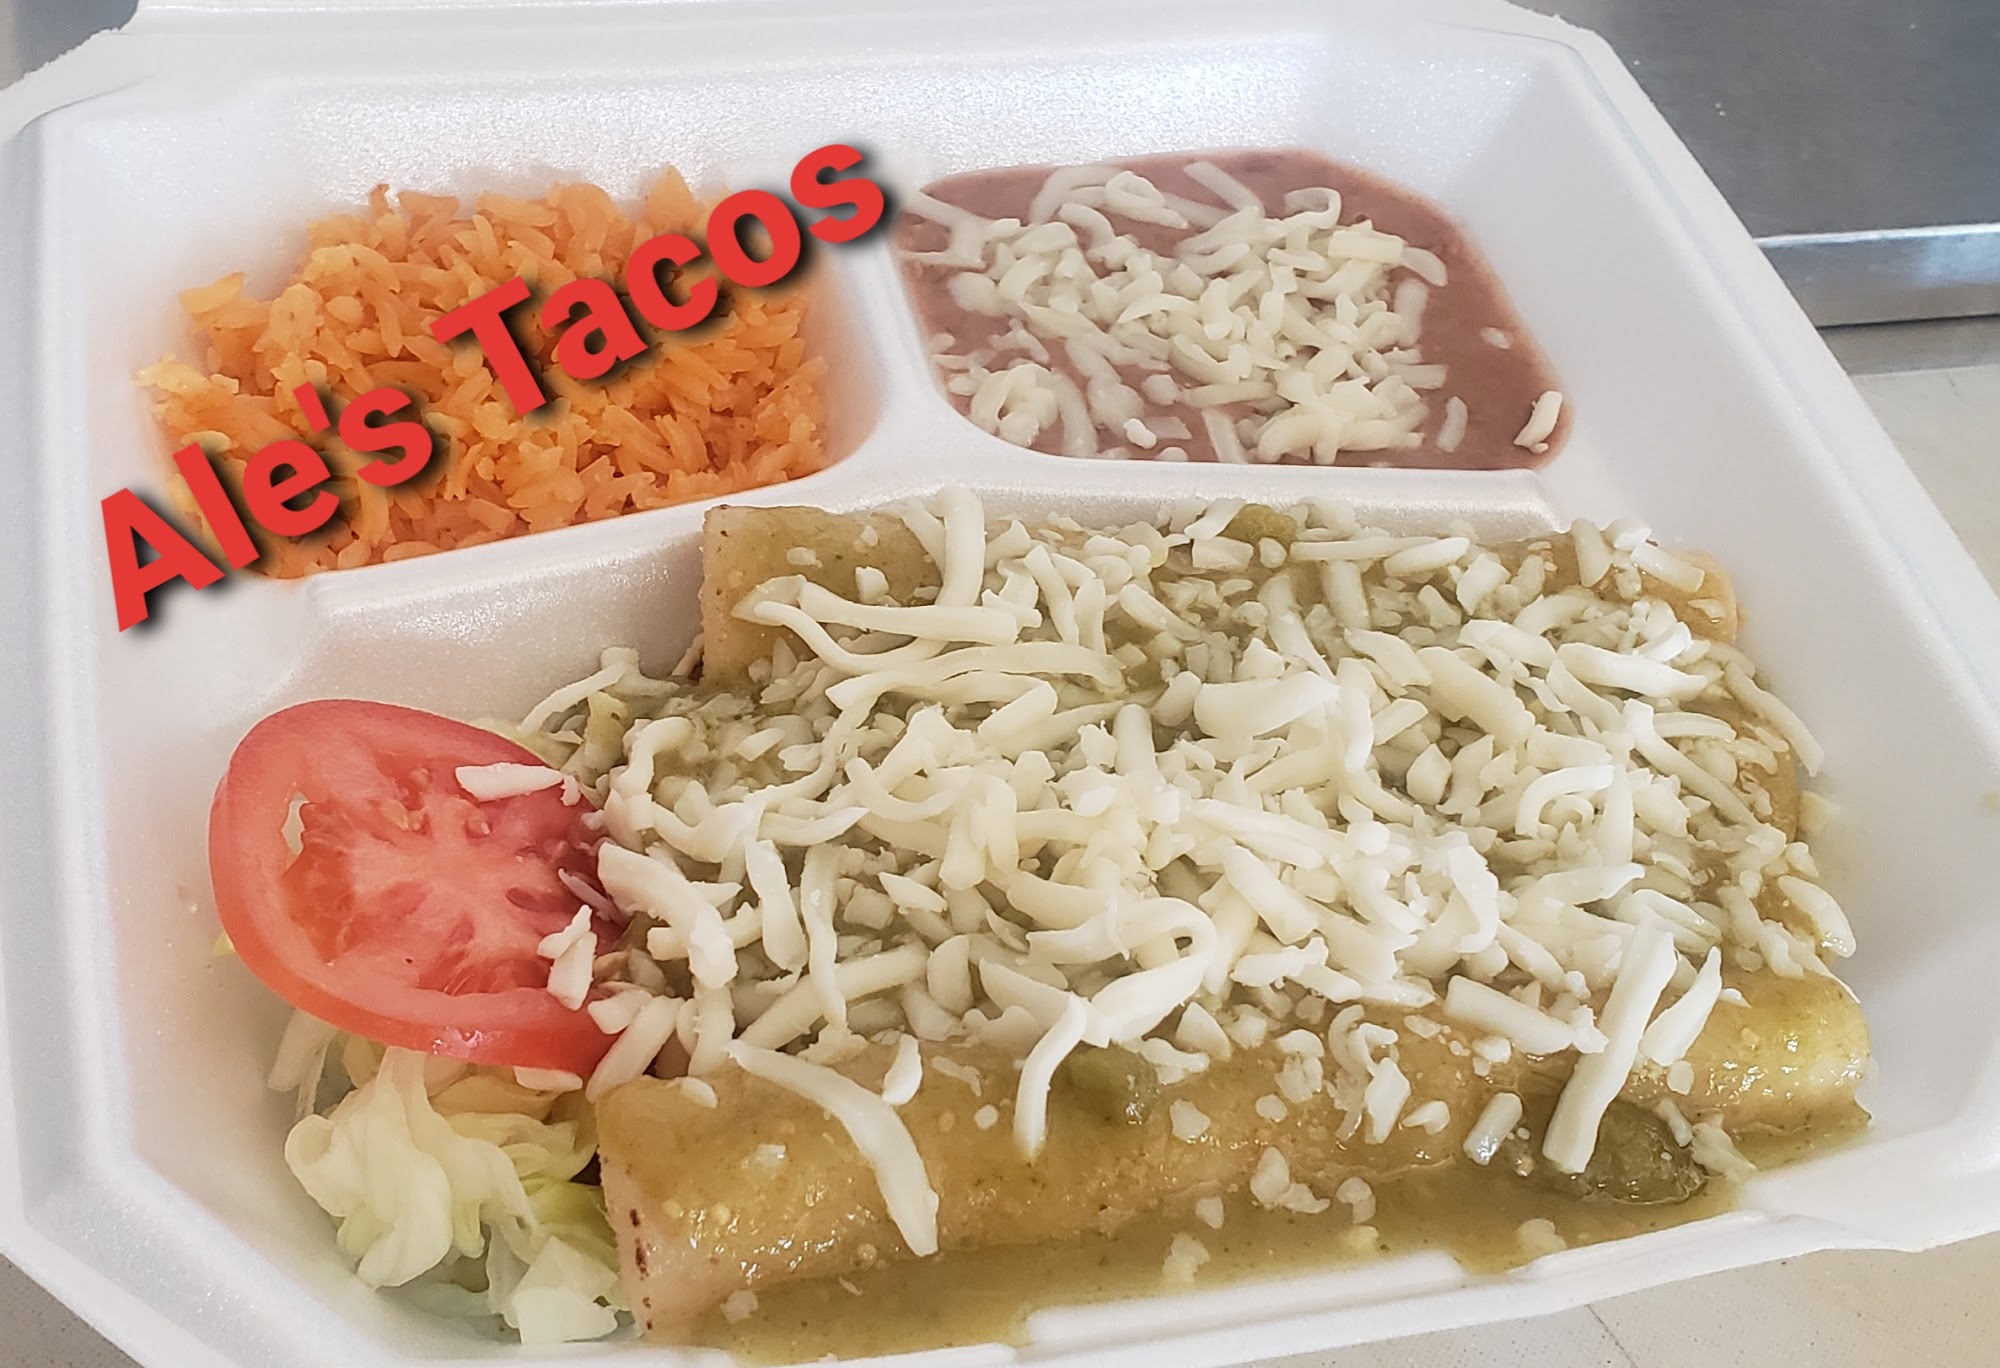 Ale's Tacos